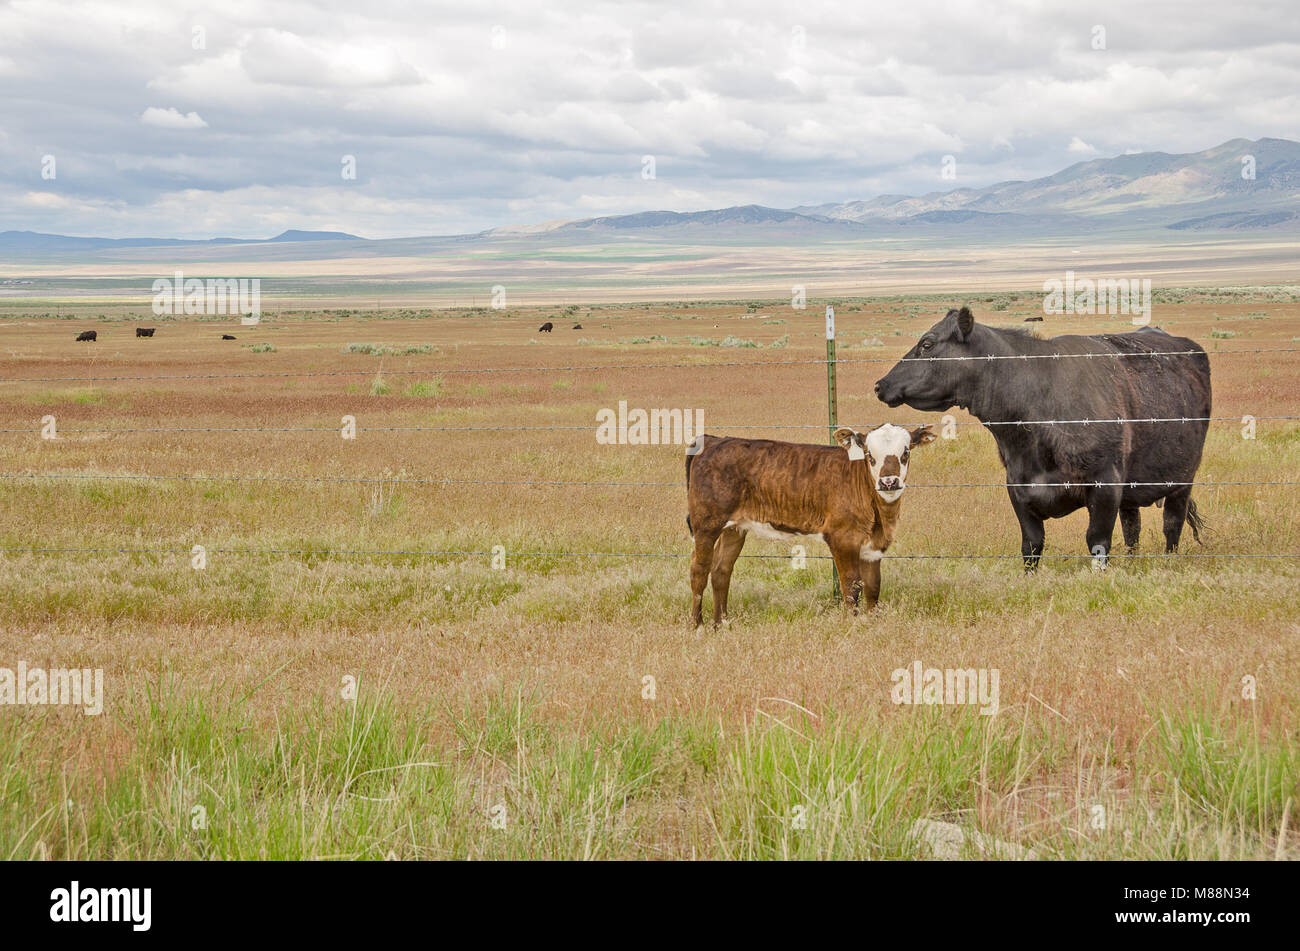 Lose braunen und weißen Kalb Überprüfen des Fotografen, während eine schwarze Kuh ein Auge auf sie hält von der anderen Seite des Zauns Stockfoto